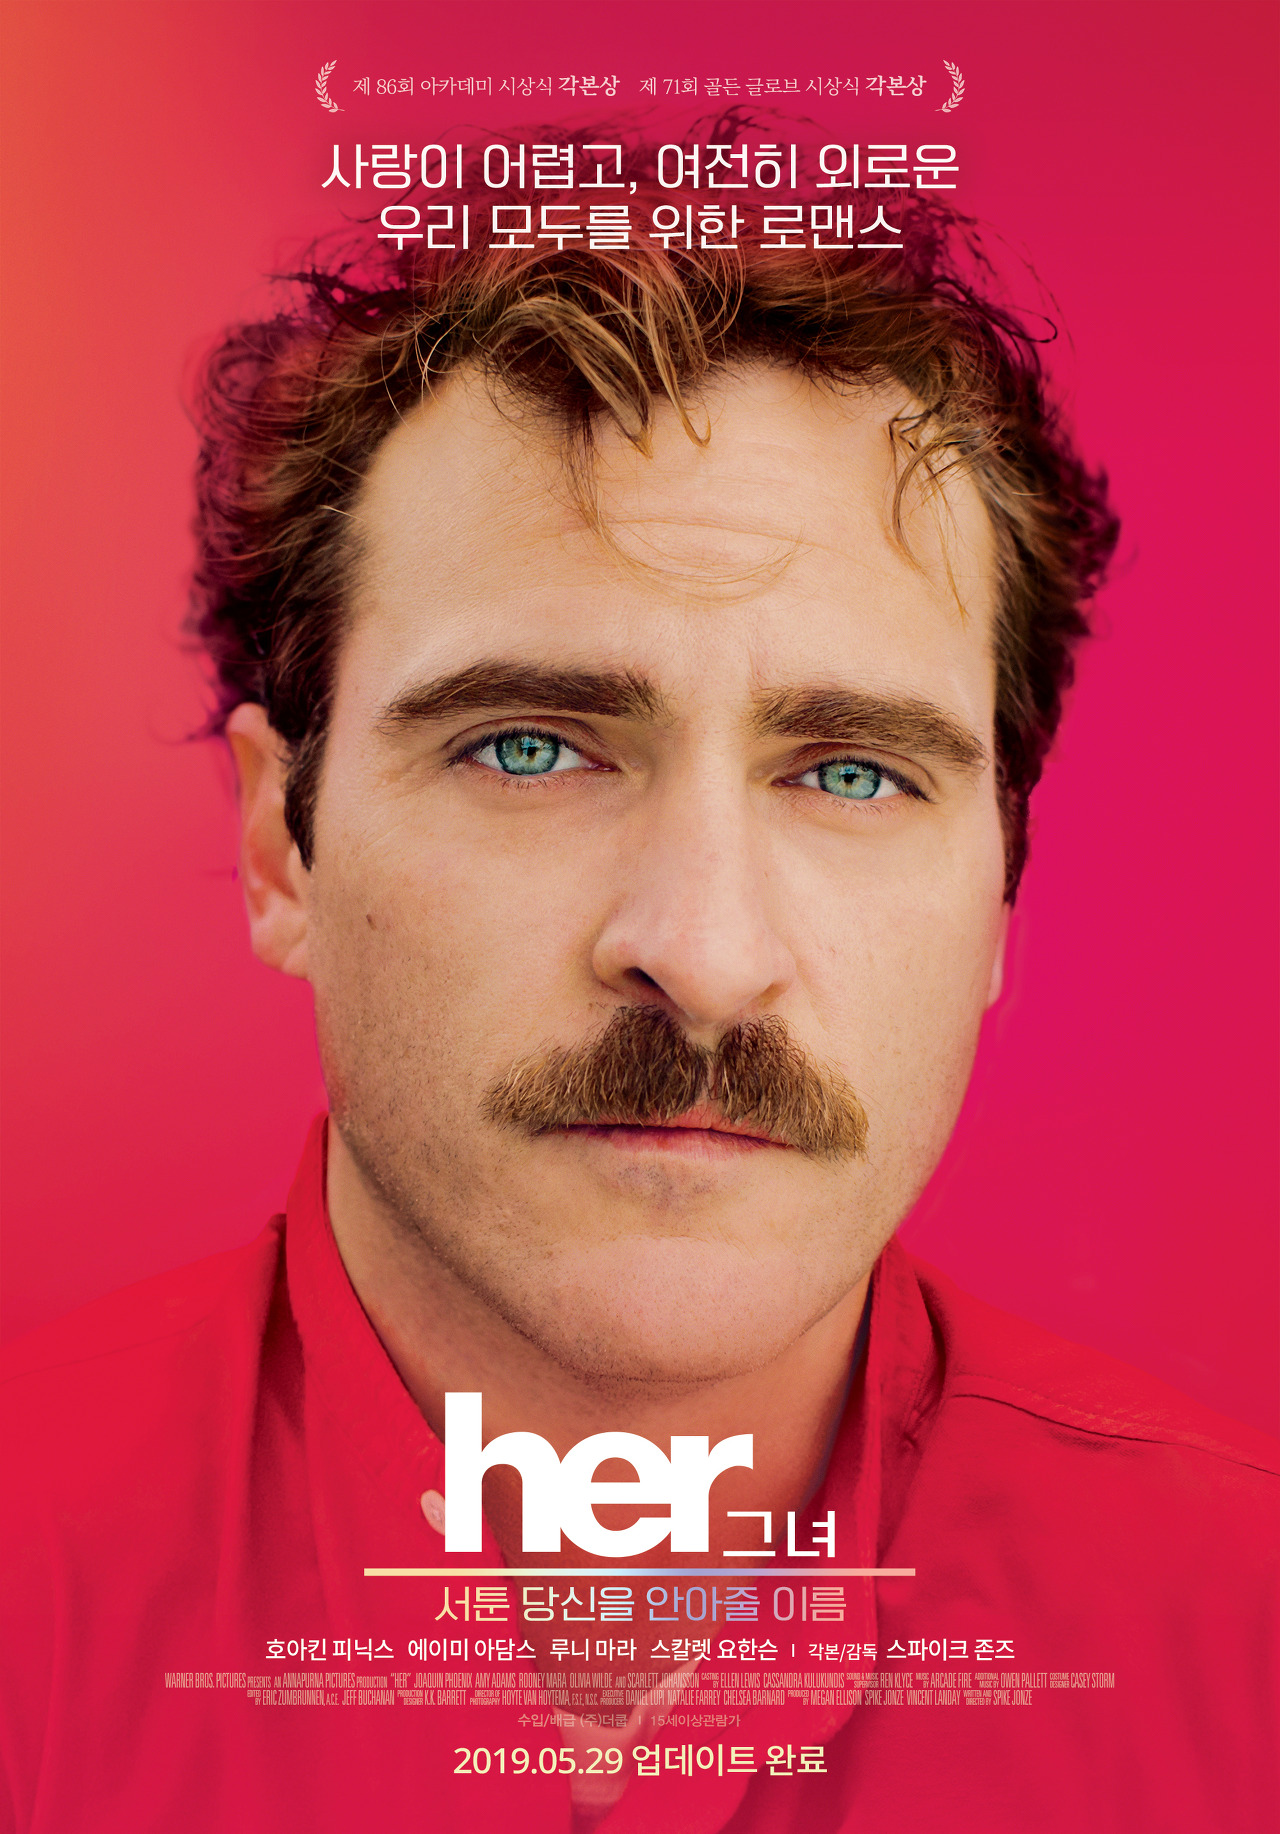 붉은색 배경에 주인공 얼굴이 나온 영화 그녀 포스터 모습이다.